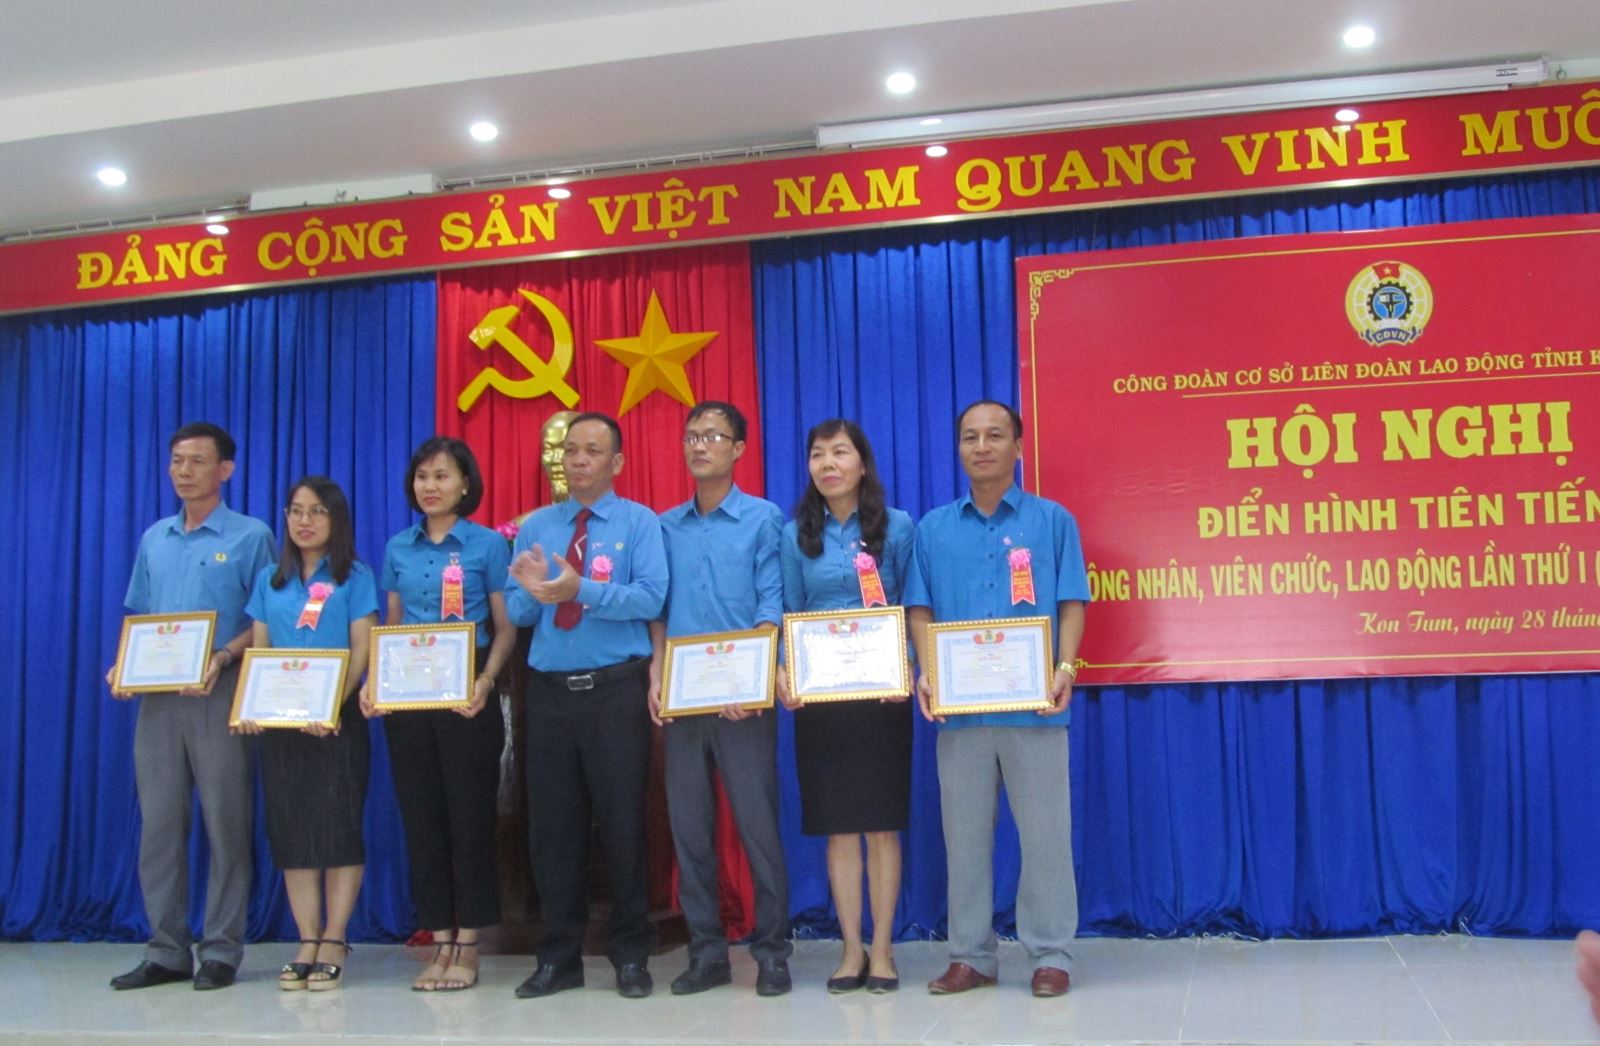 Nghị quyết số: 07/NQ-TLĐ ngày 15/01/2020 của Tổng Liên đoàn Lao động Việt Nam về đổi mới công tác thi đua, khen thưởng trong CNVCLĐ và hoạt động công đoàn.